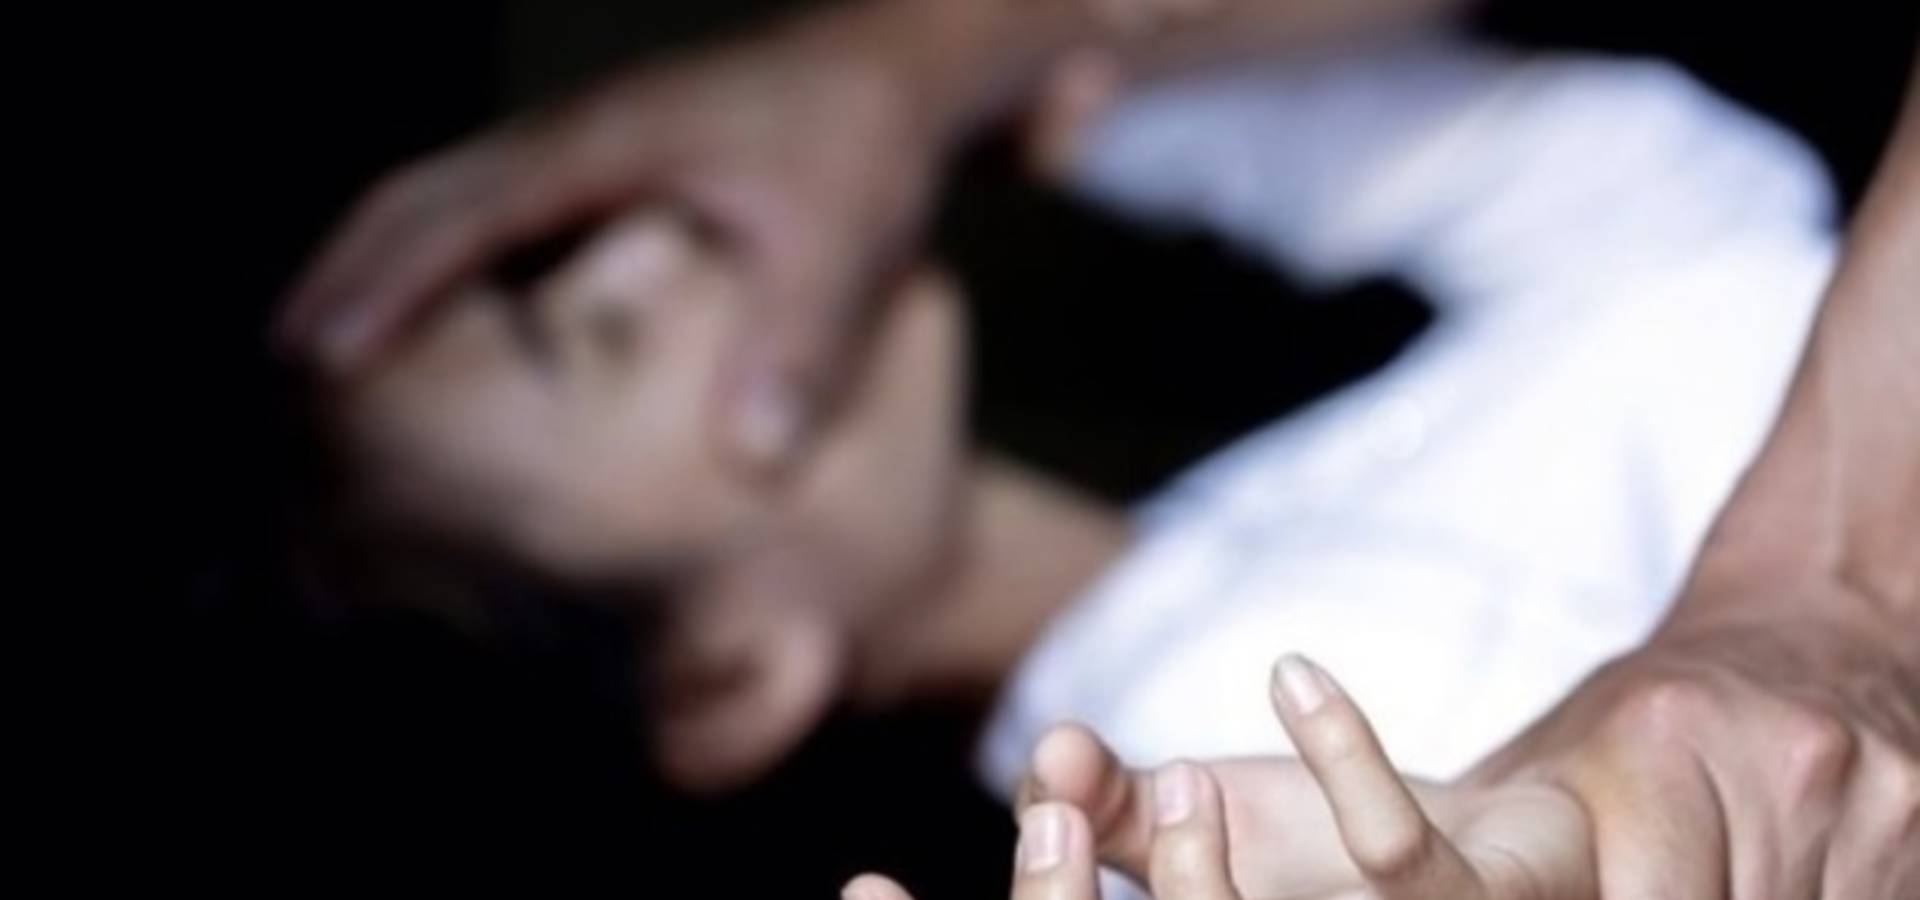 Закарпатський Доґвіль: зґвалтування школярки в гірському селі